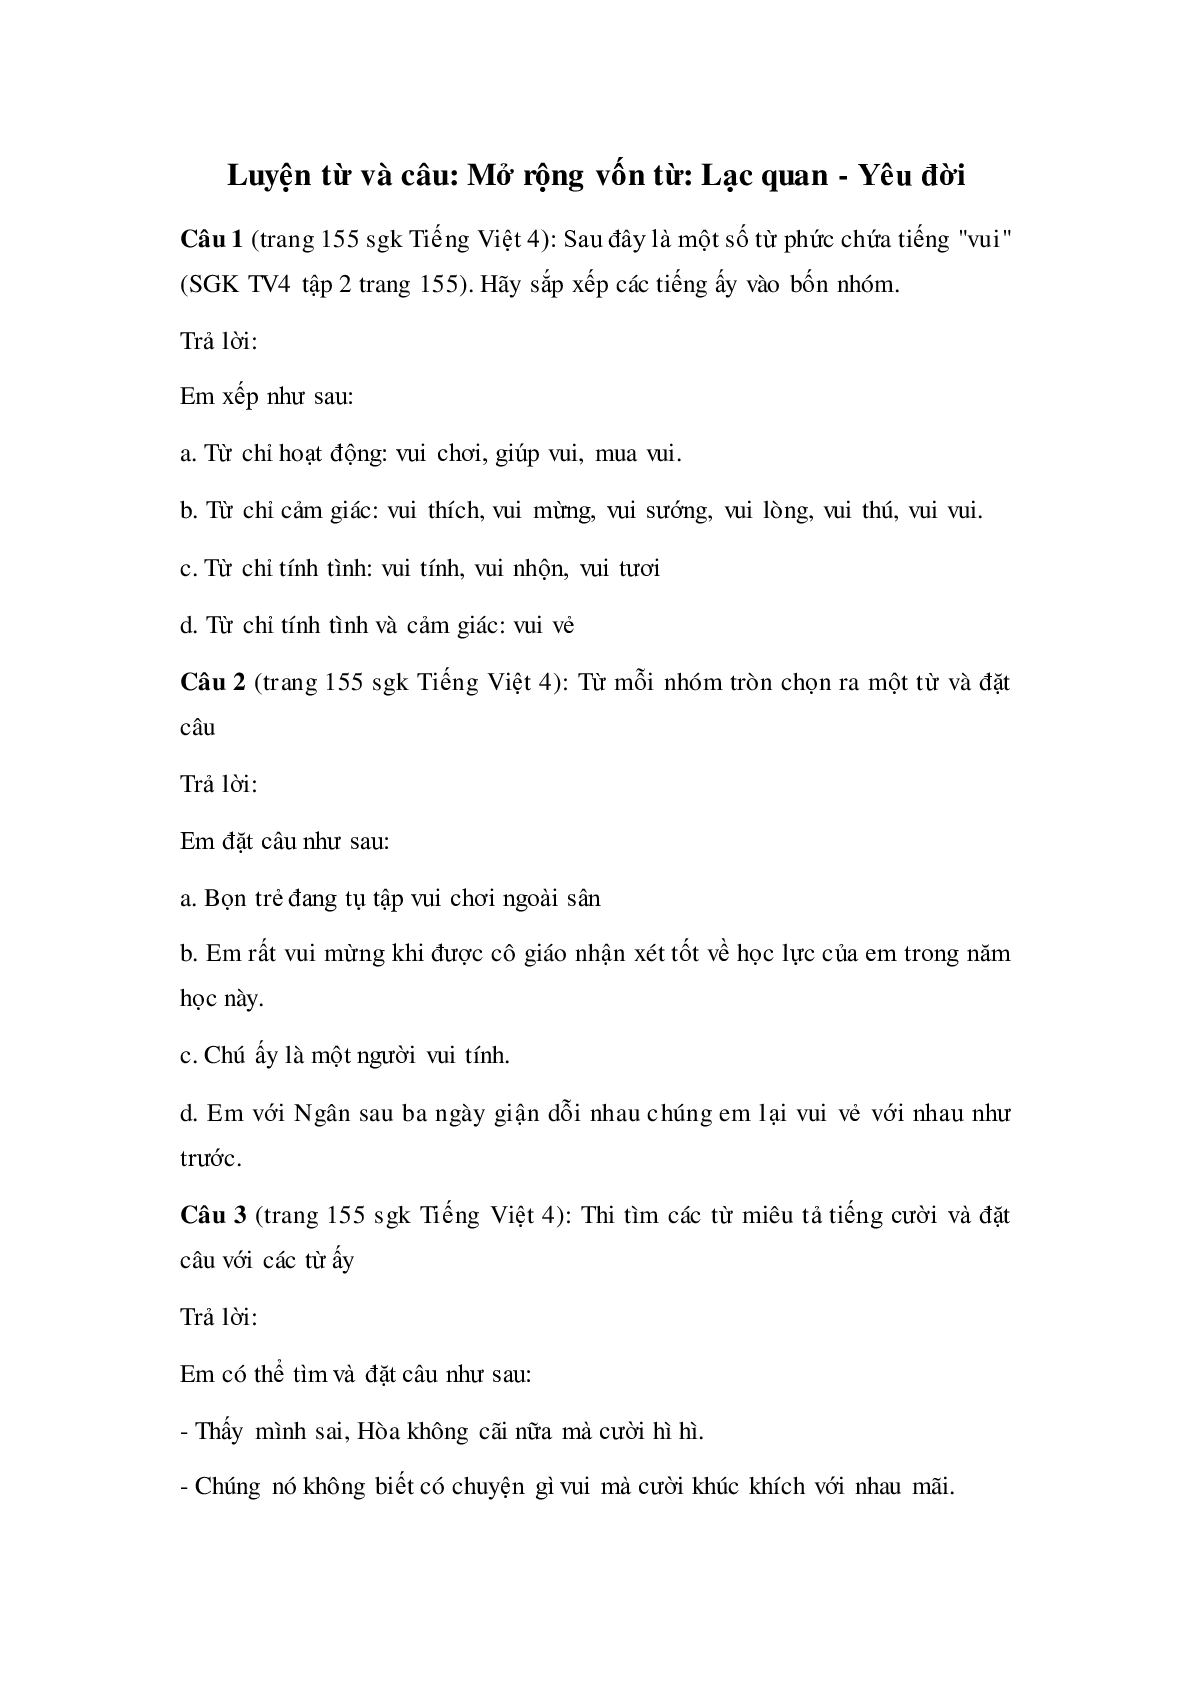 Soạn Tiếng Việt lớp 4: Luyện từ và câu: Mở rộng vốn từ: Lạc quan - Yêu đời mới nhất (trang 1)